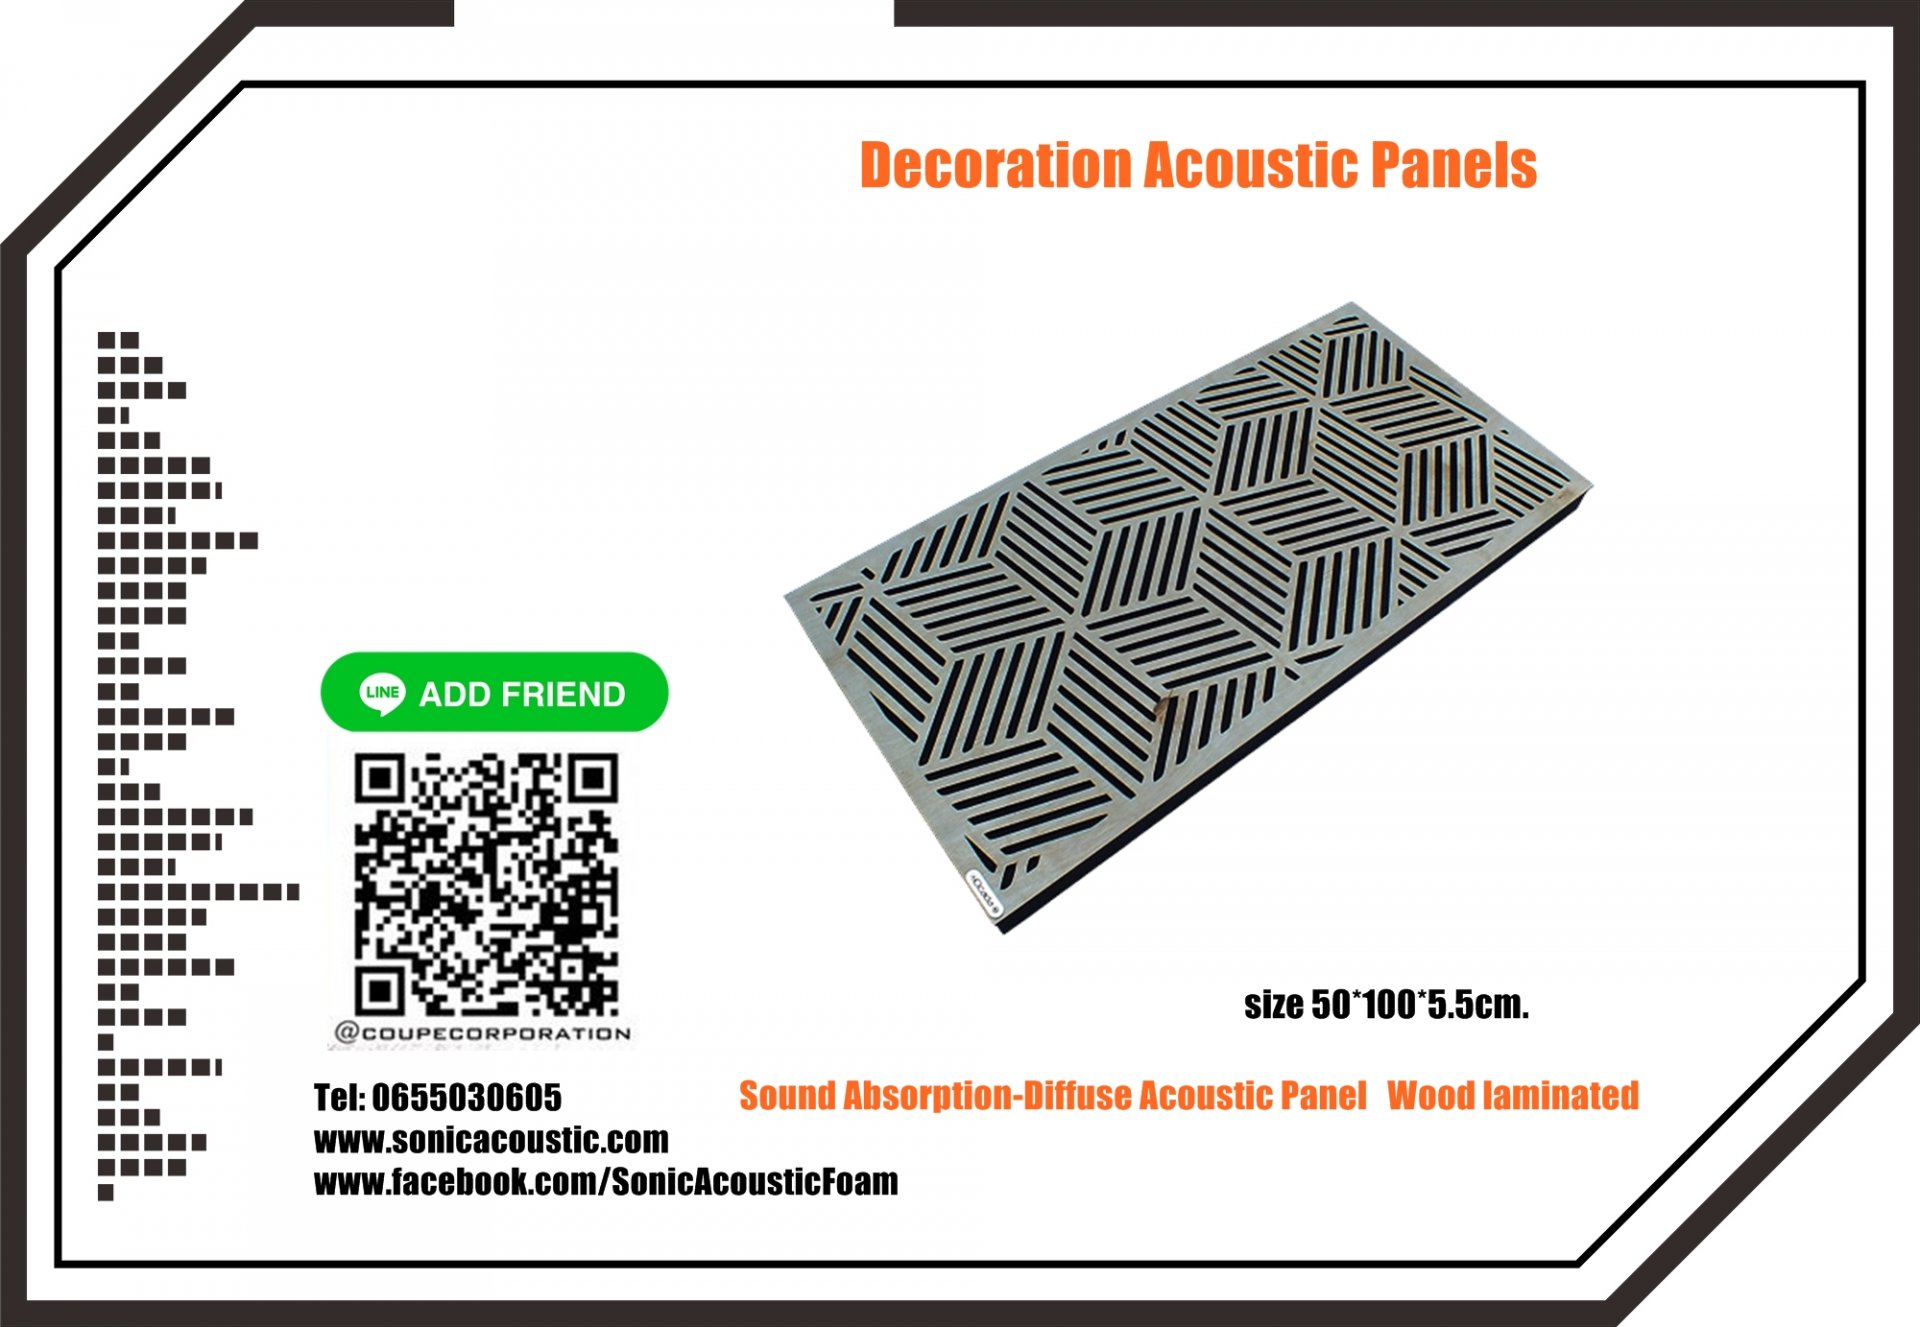 โฟมซับเสียงแผ่นกันเสียงสะท้อนแผ่นกระจายเสียง Sound Absorption-Diffuse Acoustic Panel 50*100cm.